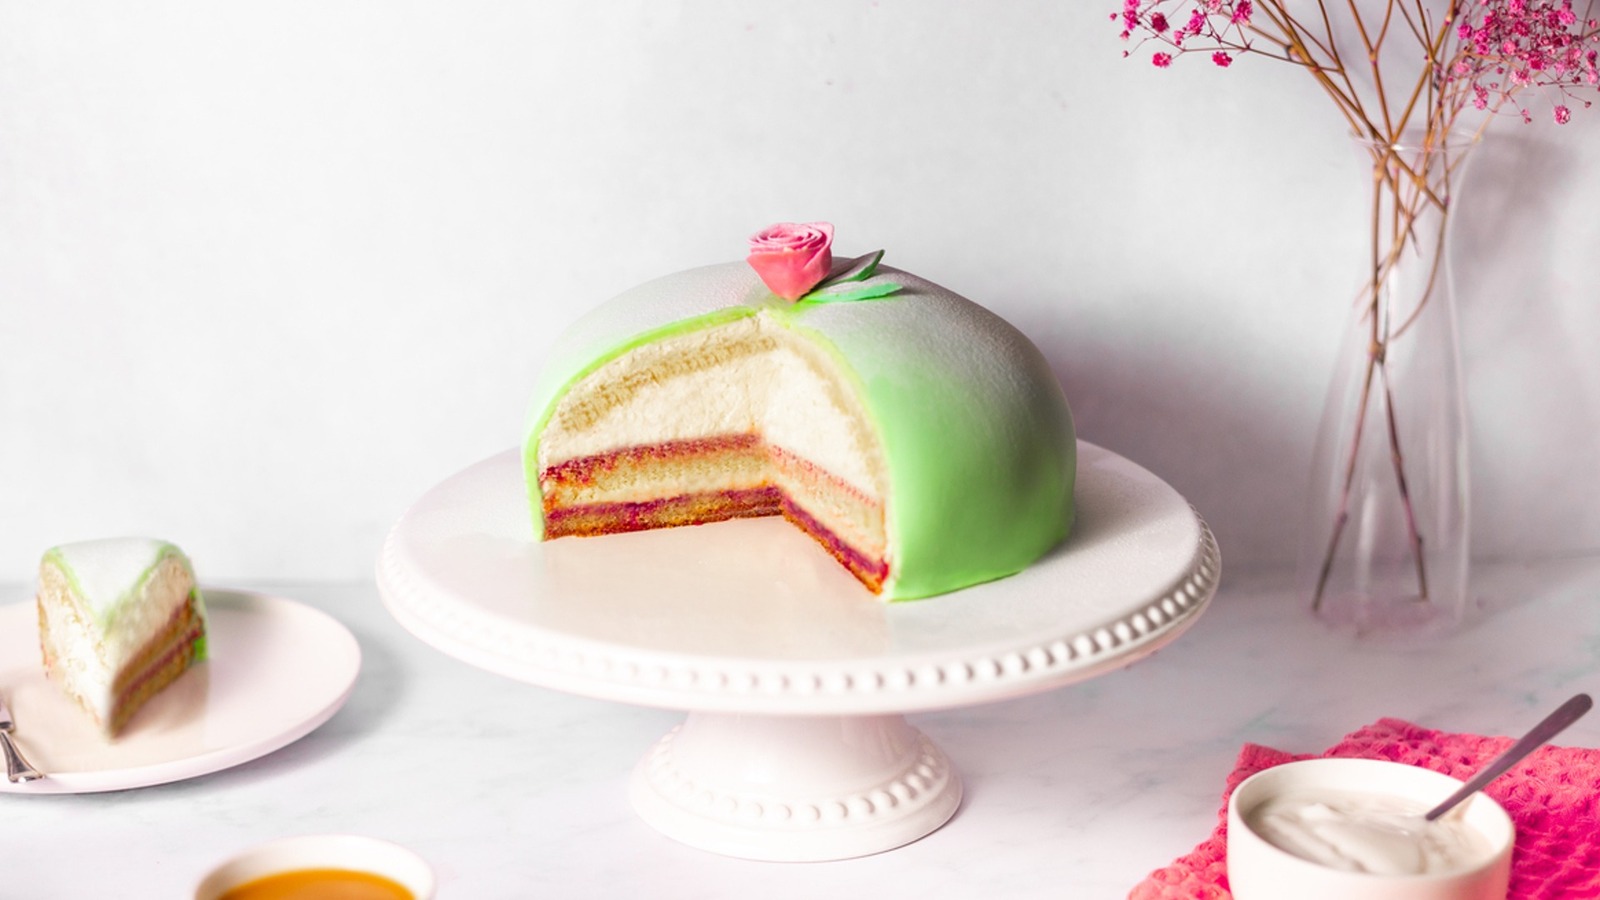 Princess Cake - The Cake Store Order - Sonoma Market-sgquangbinhtourist.com.vn